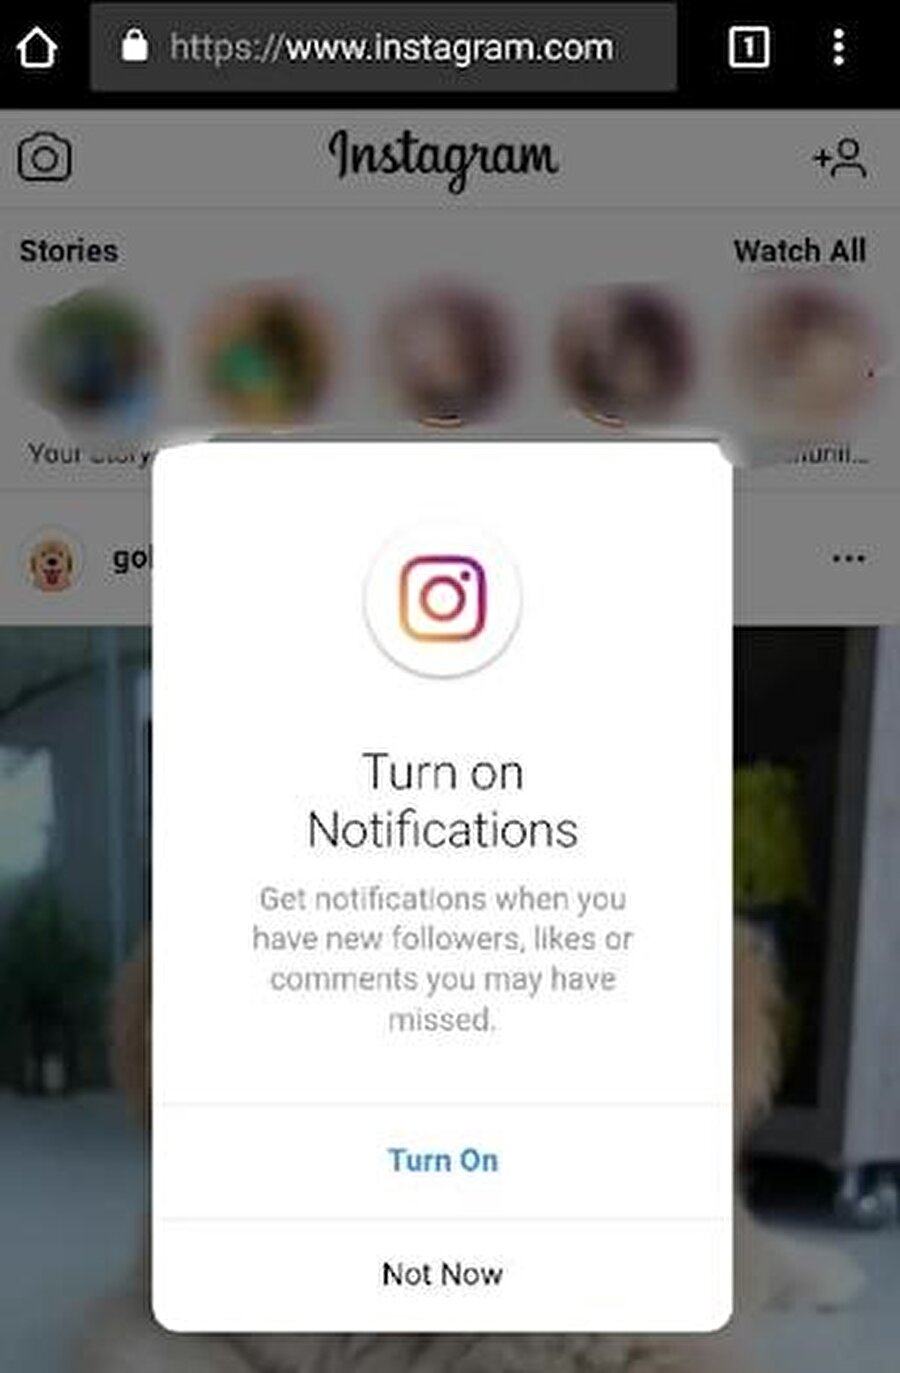 Instagram.com üzerinden erişilebilen sistemde bildirimler 'Turn On' tuşuyla basit bir şekilde aktif edilebiliyor. 